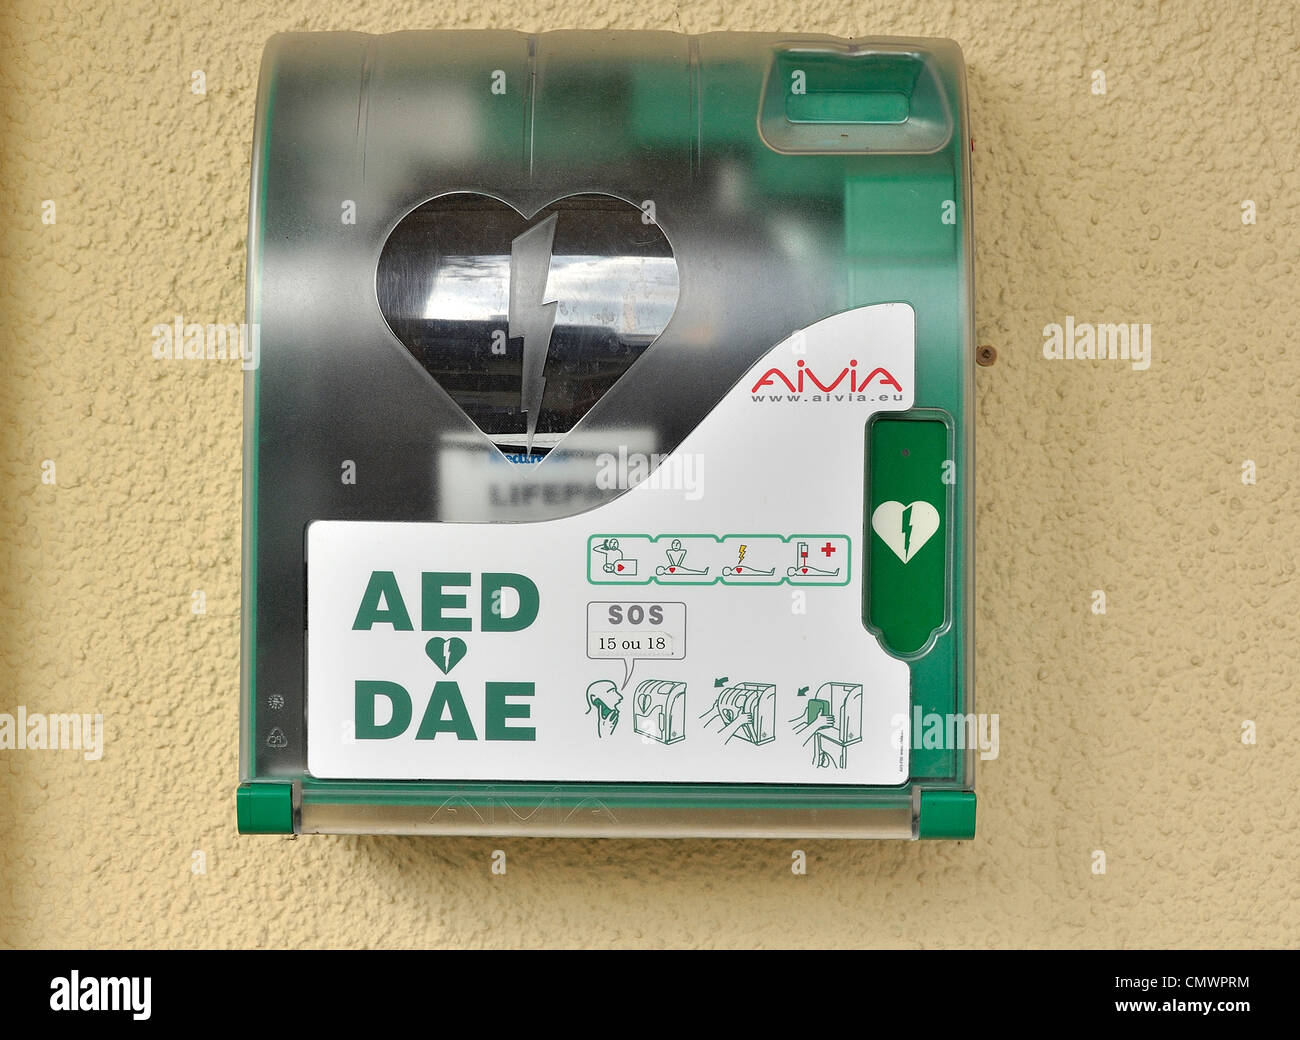 Defibrillator auf einem öffentlichen Platz, Ausrüstung wird verwendet, um die Herzfrequenz eines Opfers Herzstillstand zu analysieren. Stockfoto